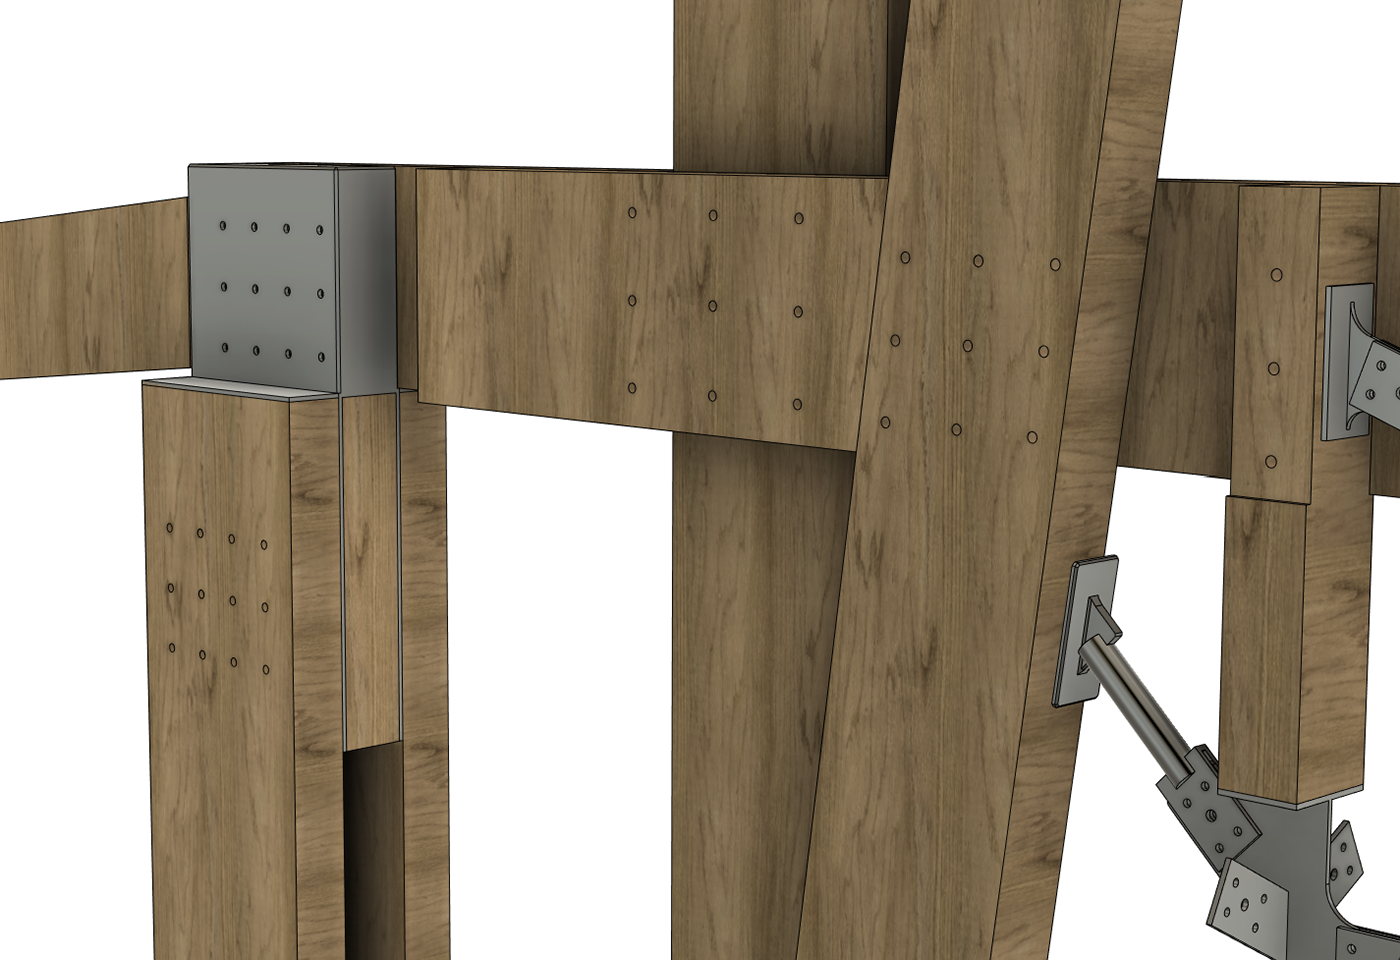 construccion arquitectura modelado 3d Render visualization corona calculo estructural construcción en madera diseño estructural proyecto de diseño